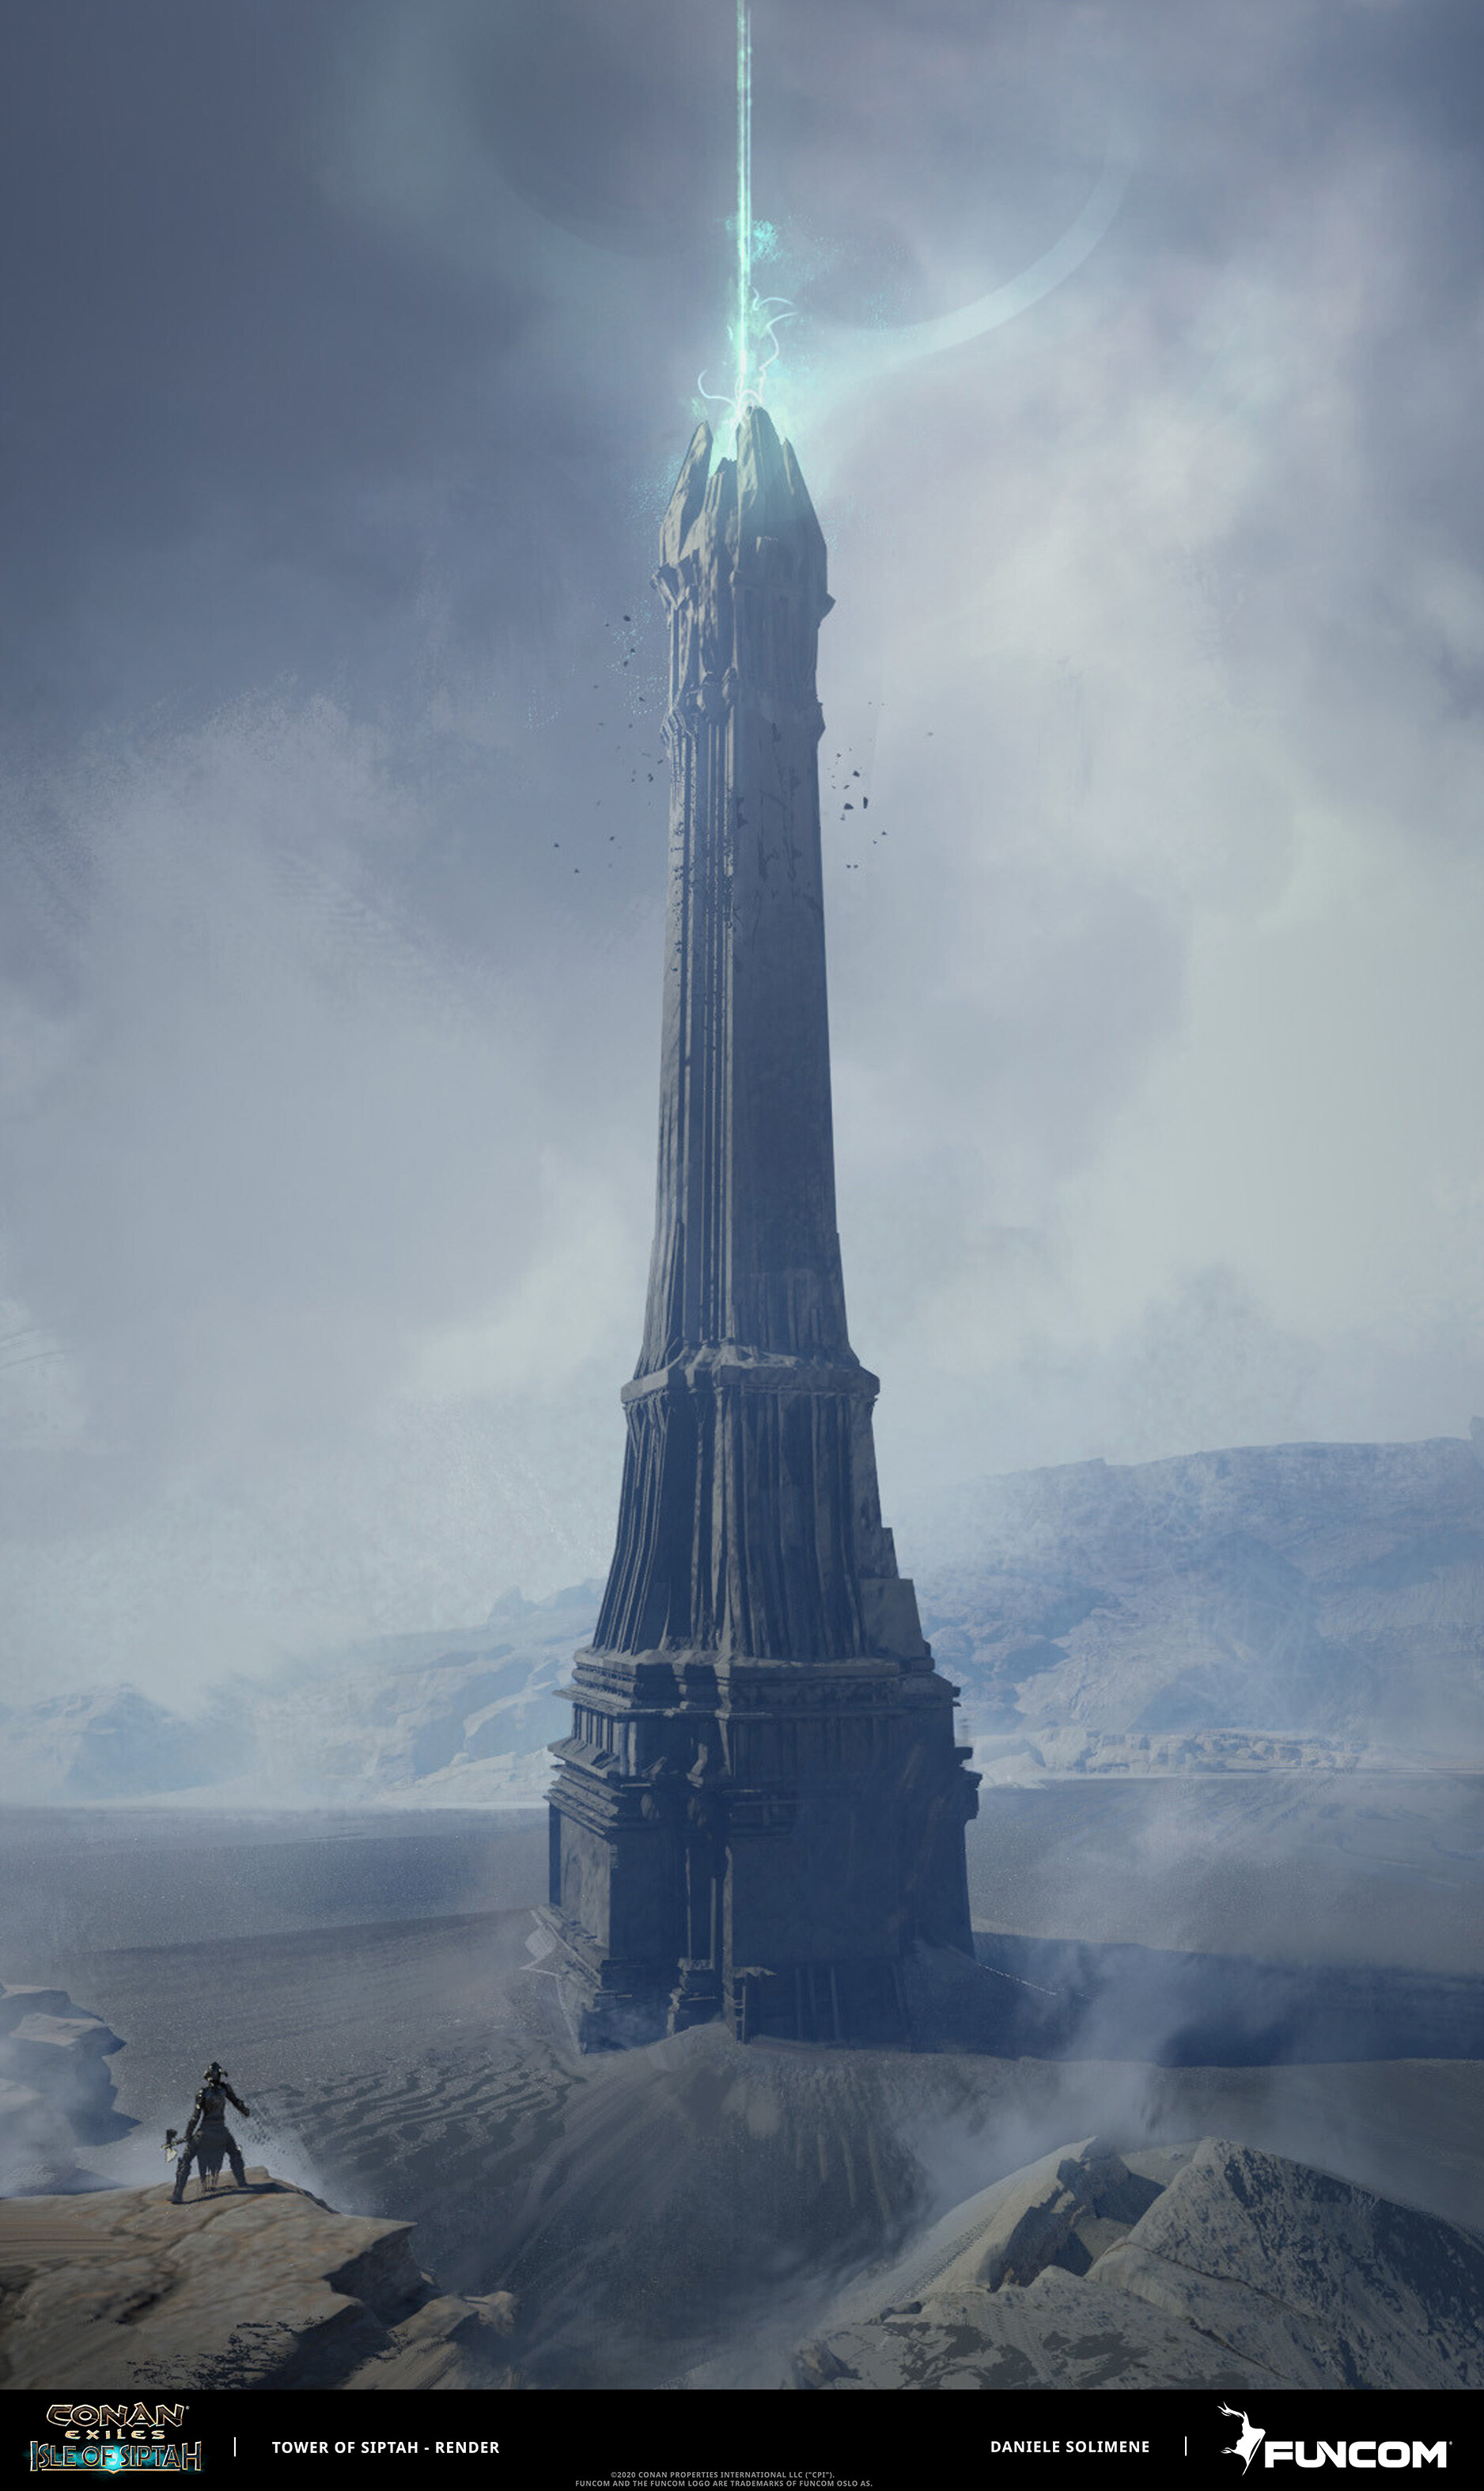 Daniele Solimene - Tower of Siptah